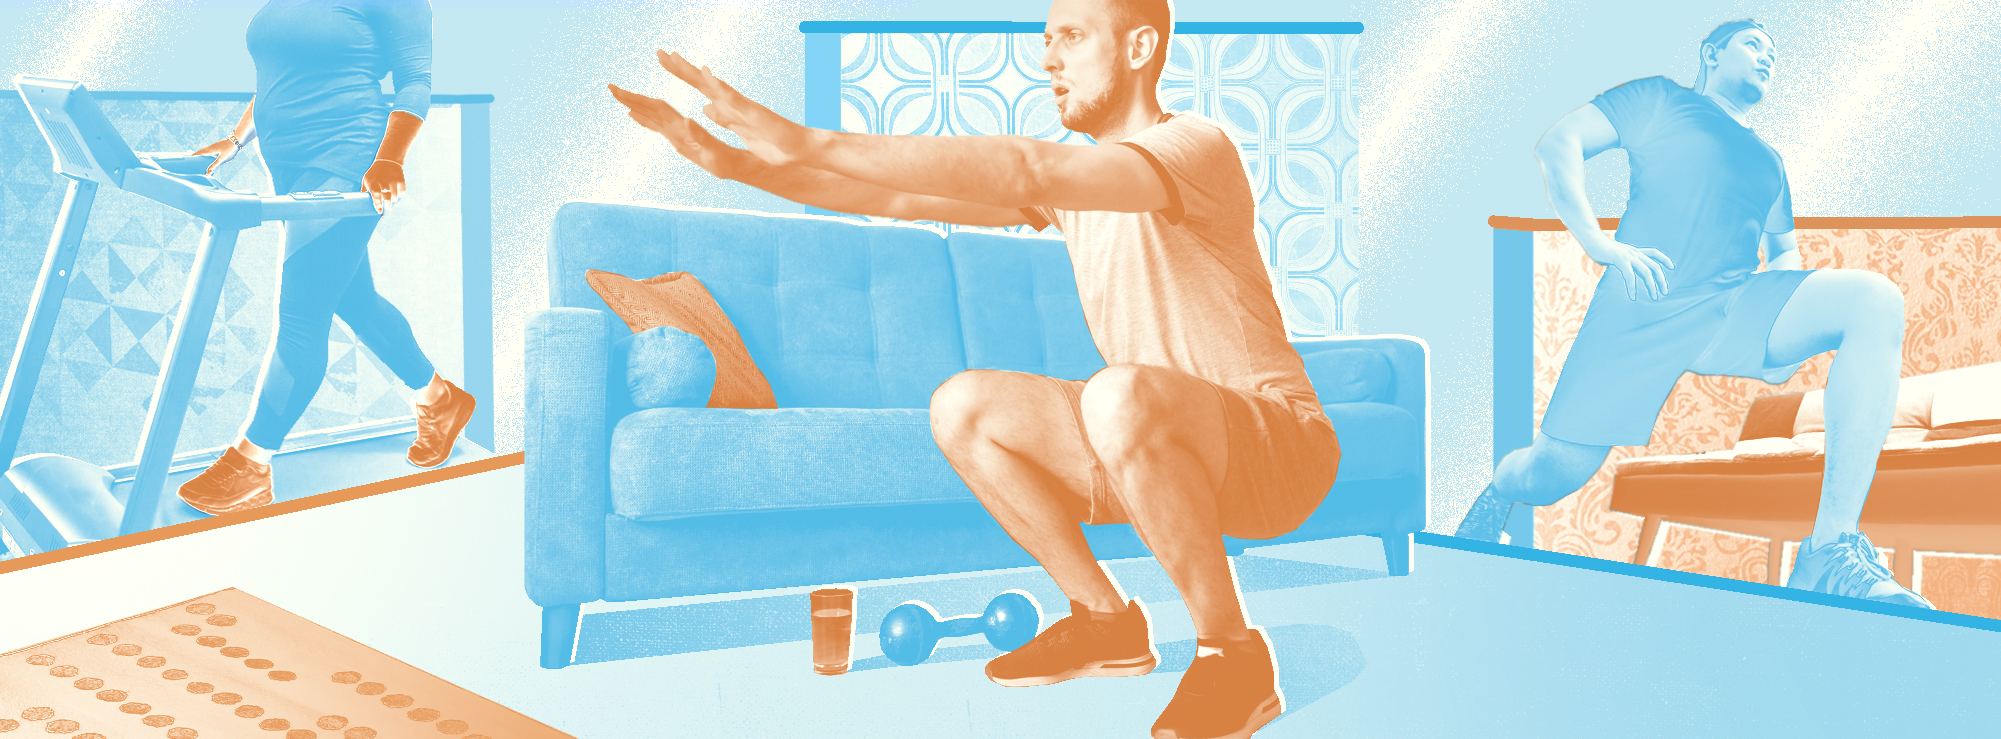 Полноразмерная обложка поста на тему: Как заменить фитнес домашними делами